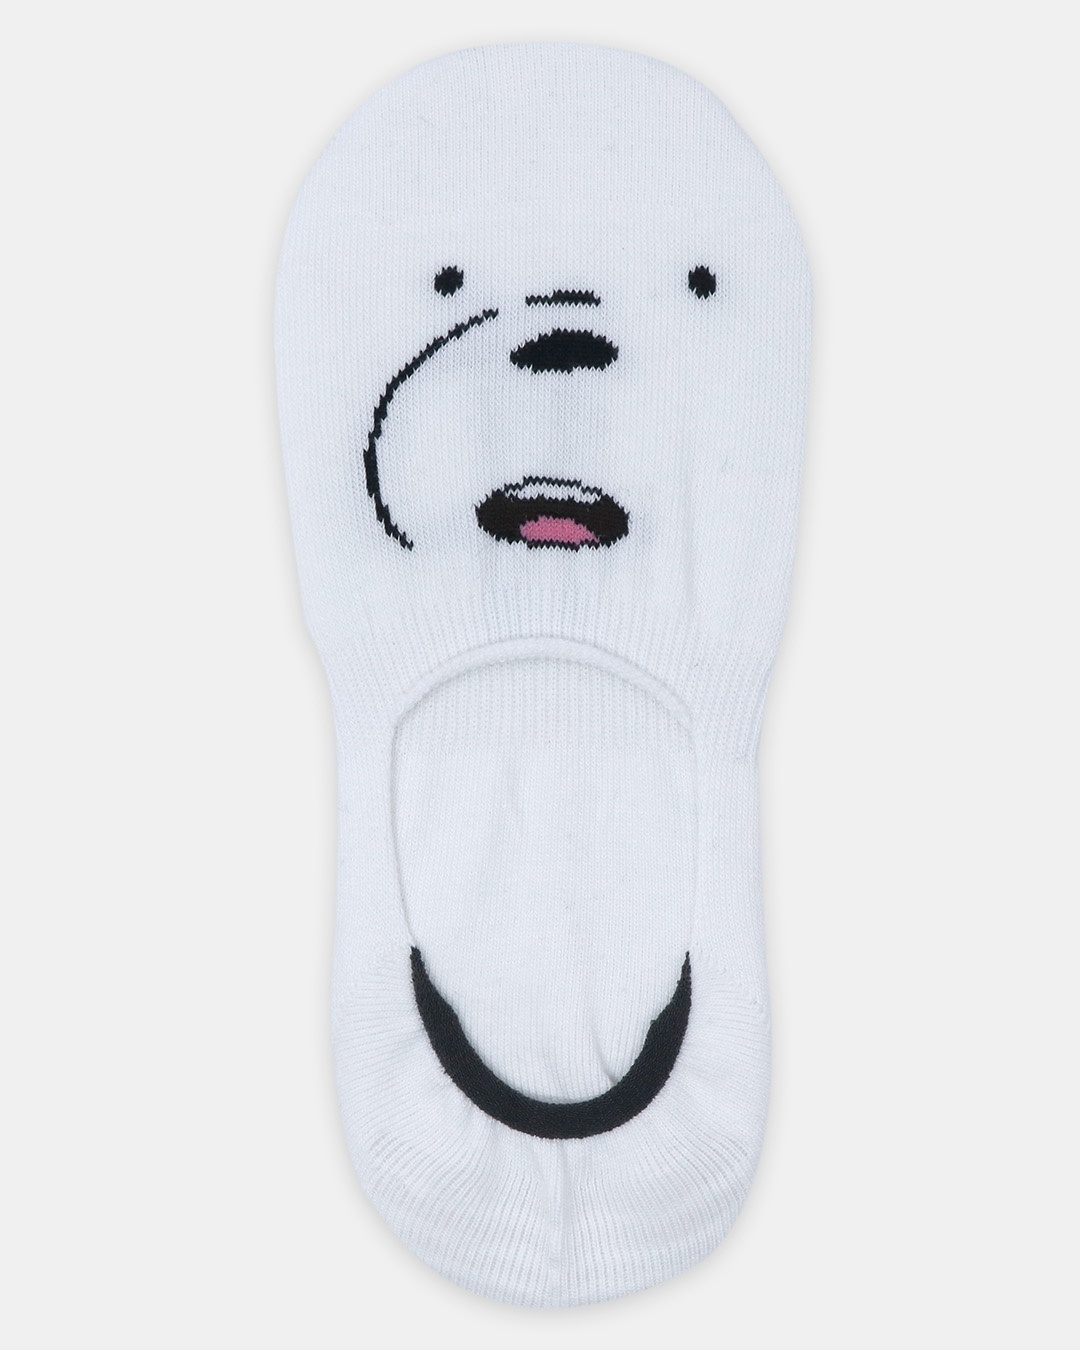 Shop We Bare Bears Loafer Socks Combo For Women (Pack Of 3)